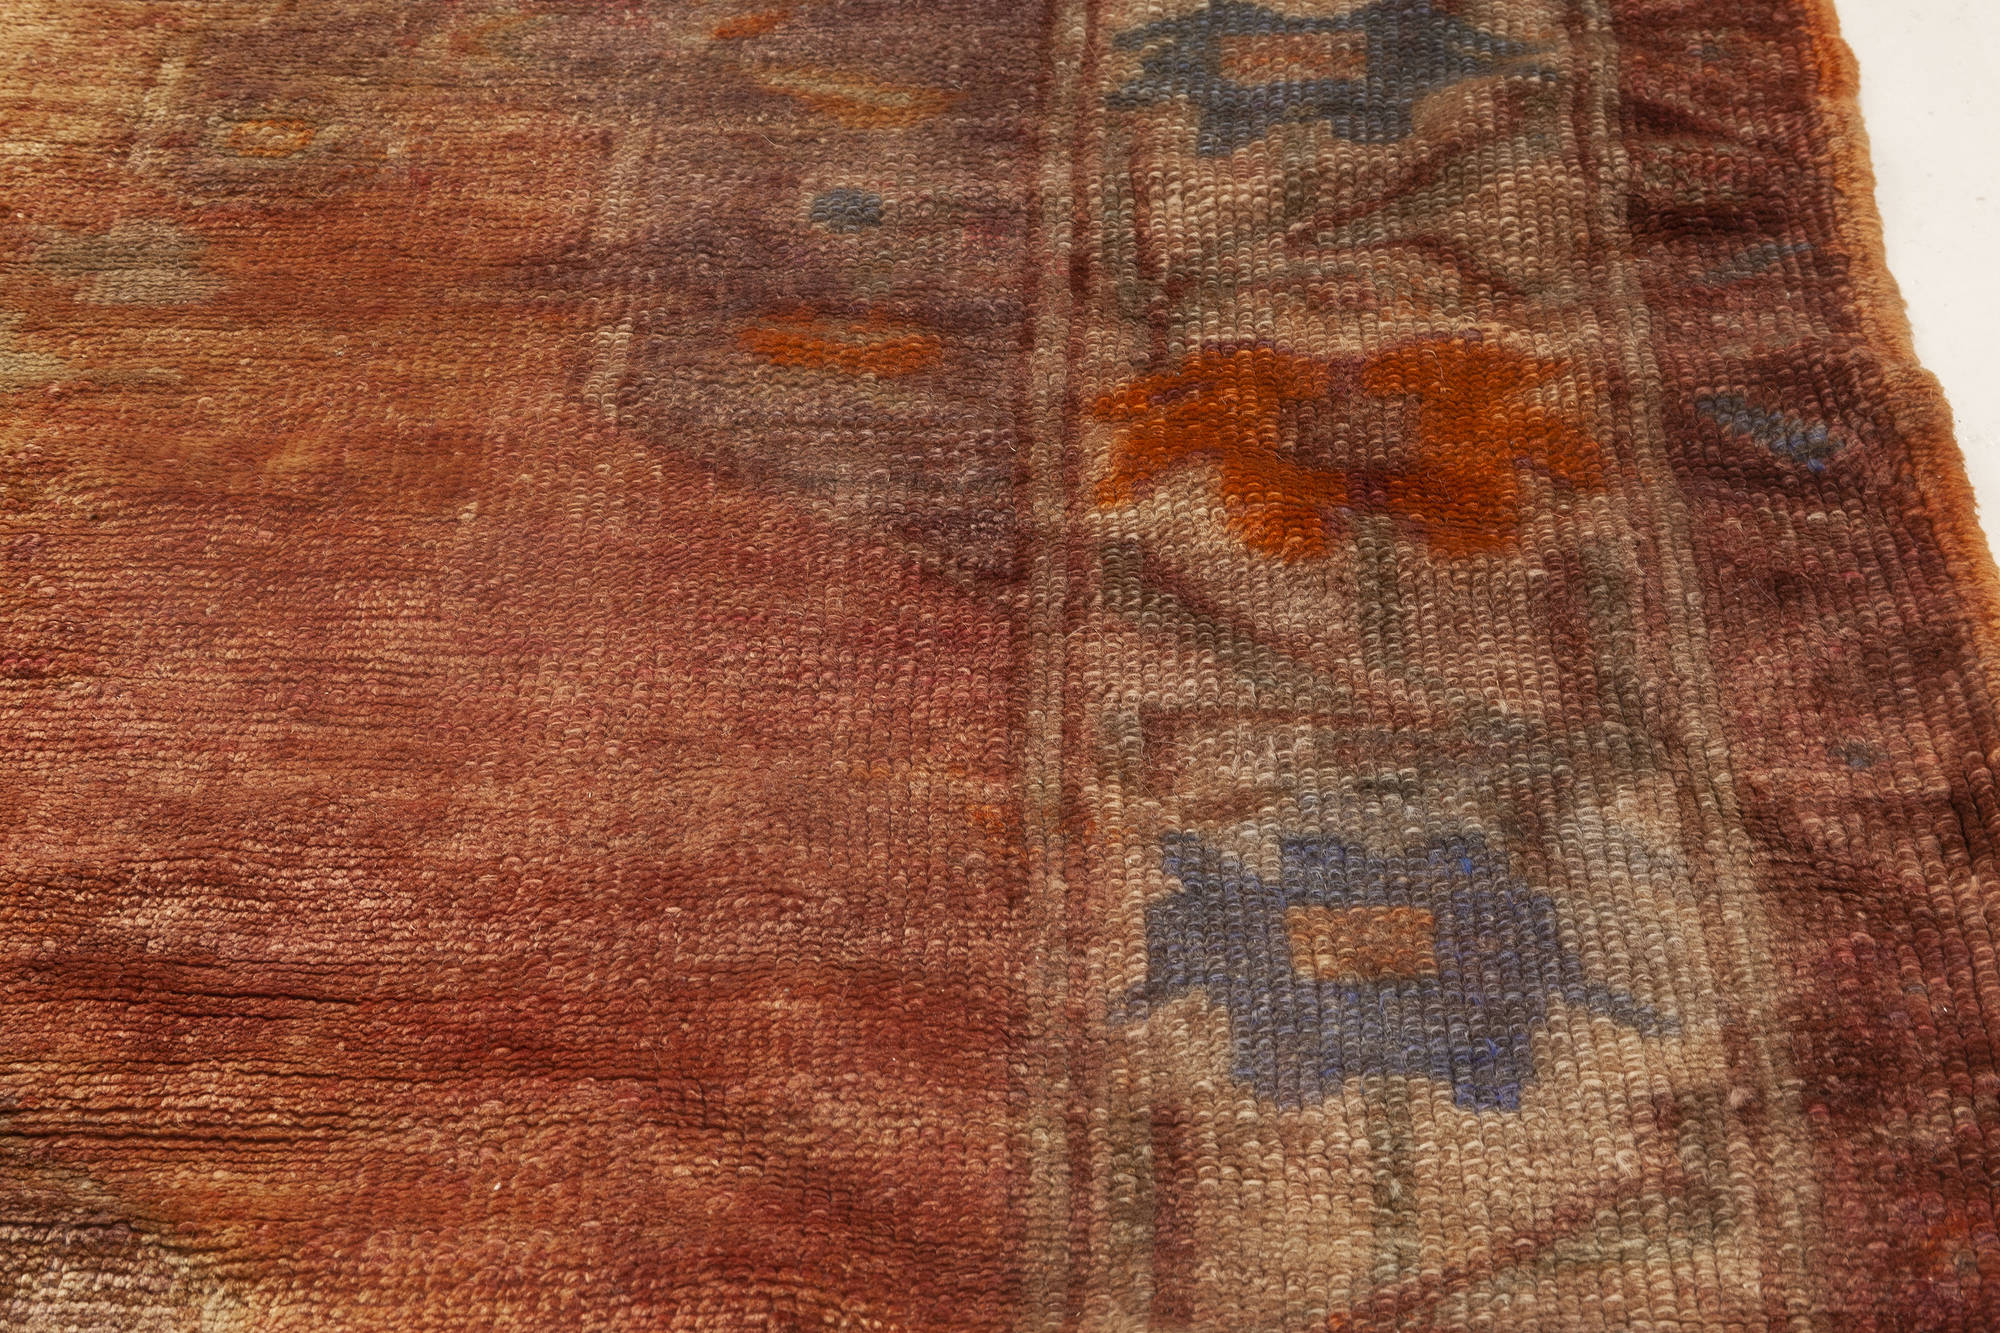 turkish rug 3.6x5.4 feet pastel color rug VT 1437 oushak rug area rug vintage rug antique rug wool on wool rug pink blue rug